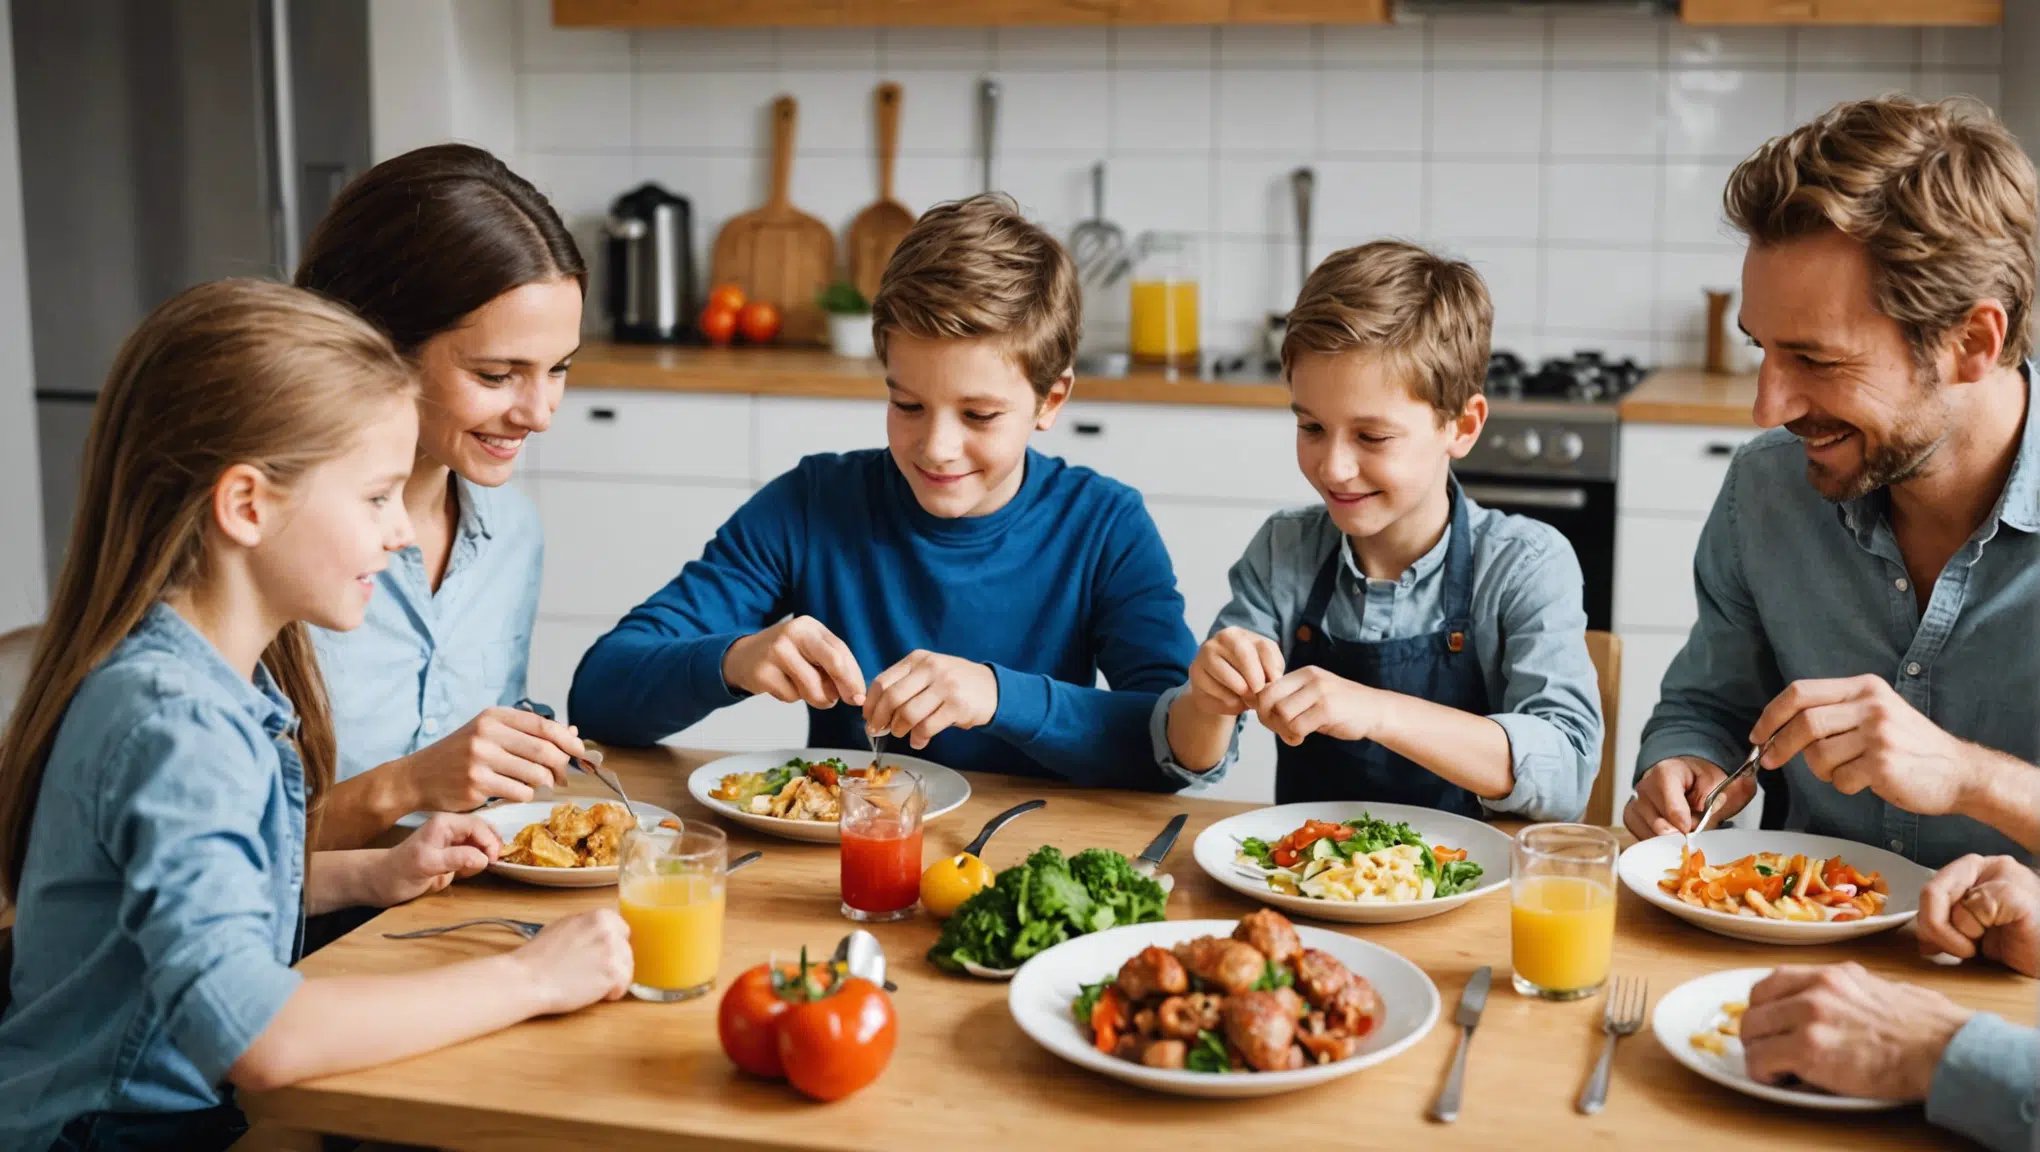 découvrez des idées de jeux en cuisine pour rendre les repas familiaux ludiques et amusants. des astuces pour rendre la préparation des repas amusante pour les enfants et les adultes.